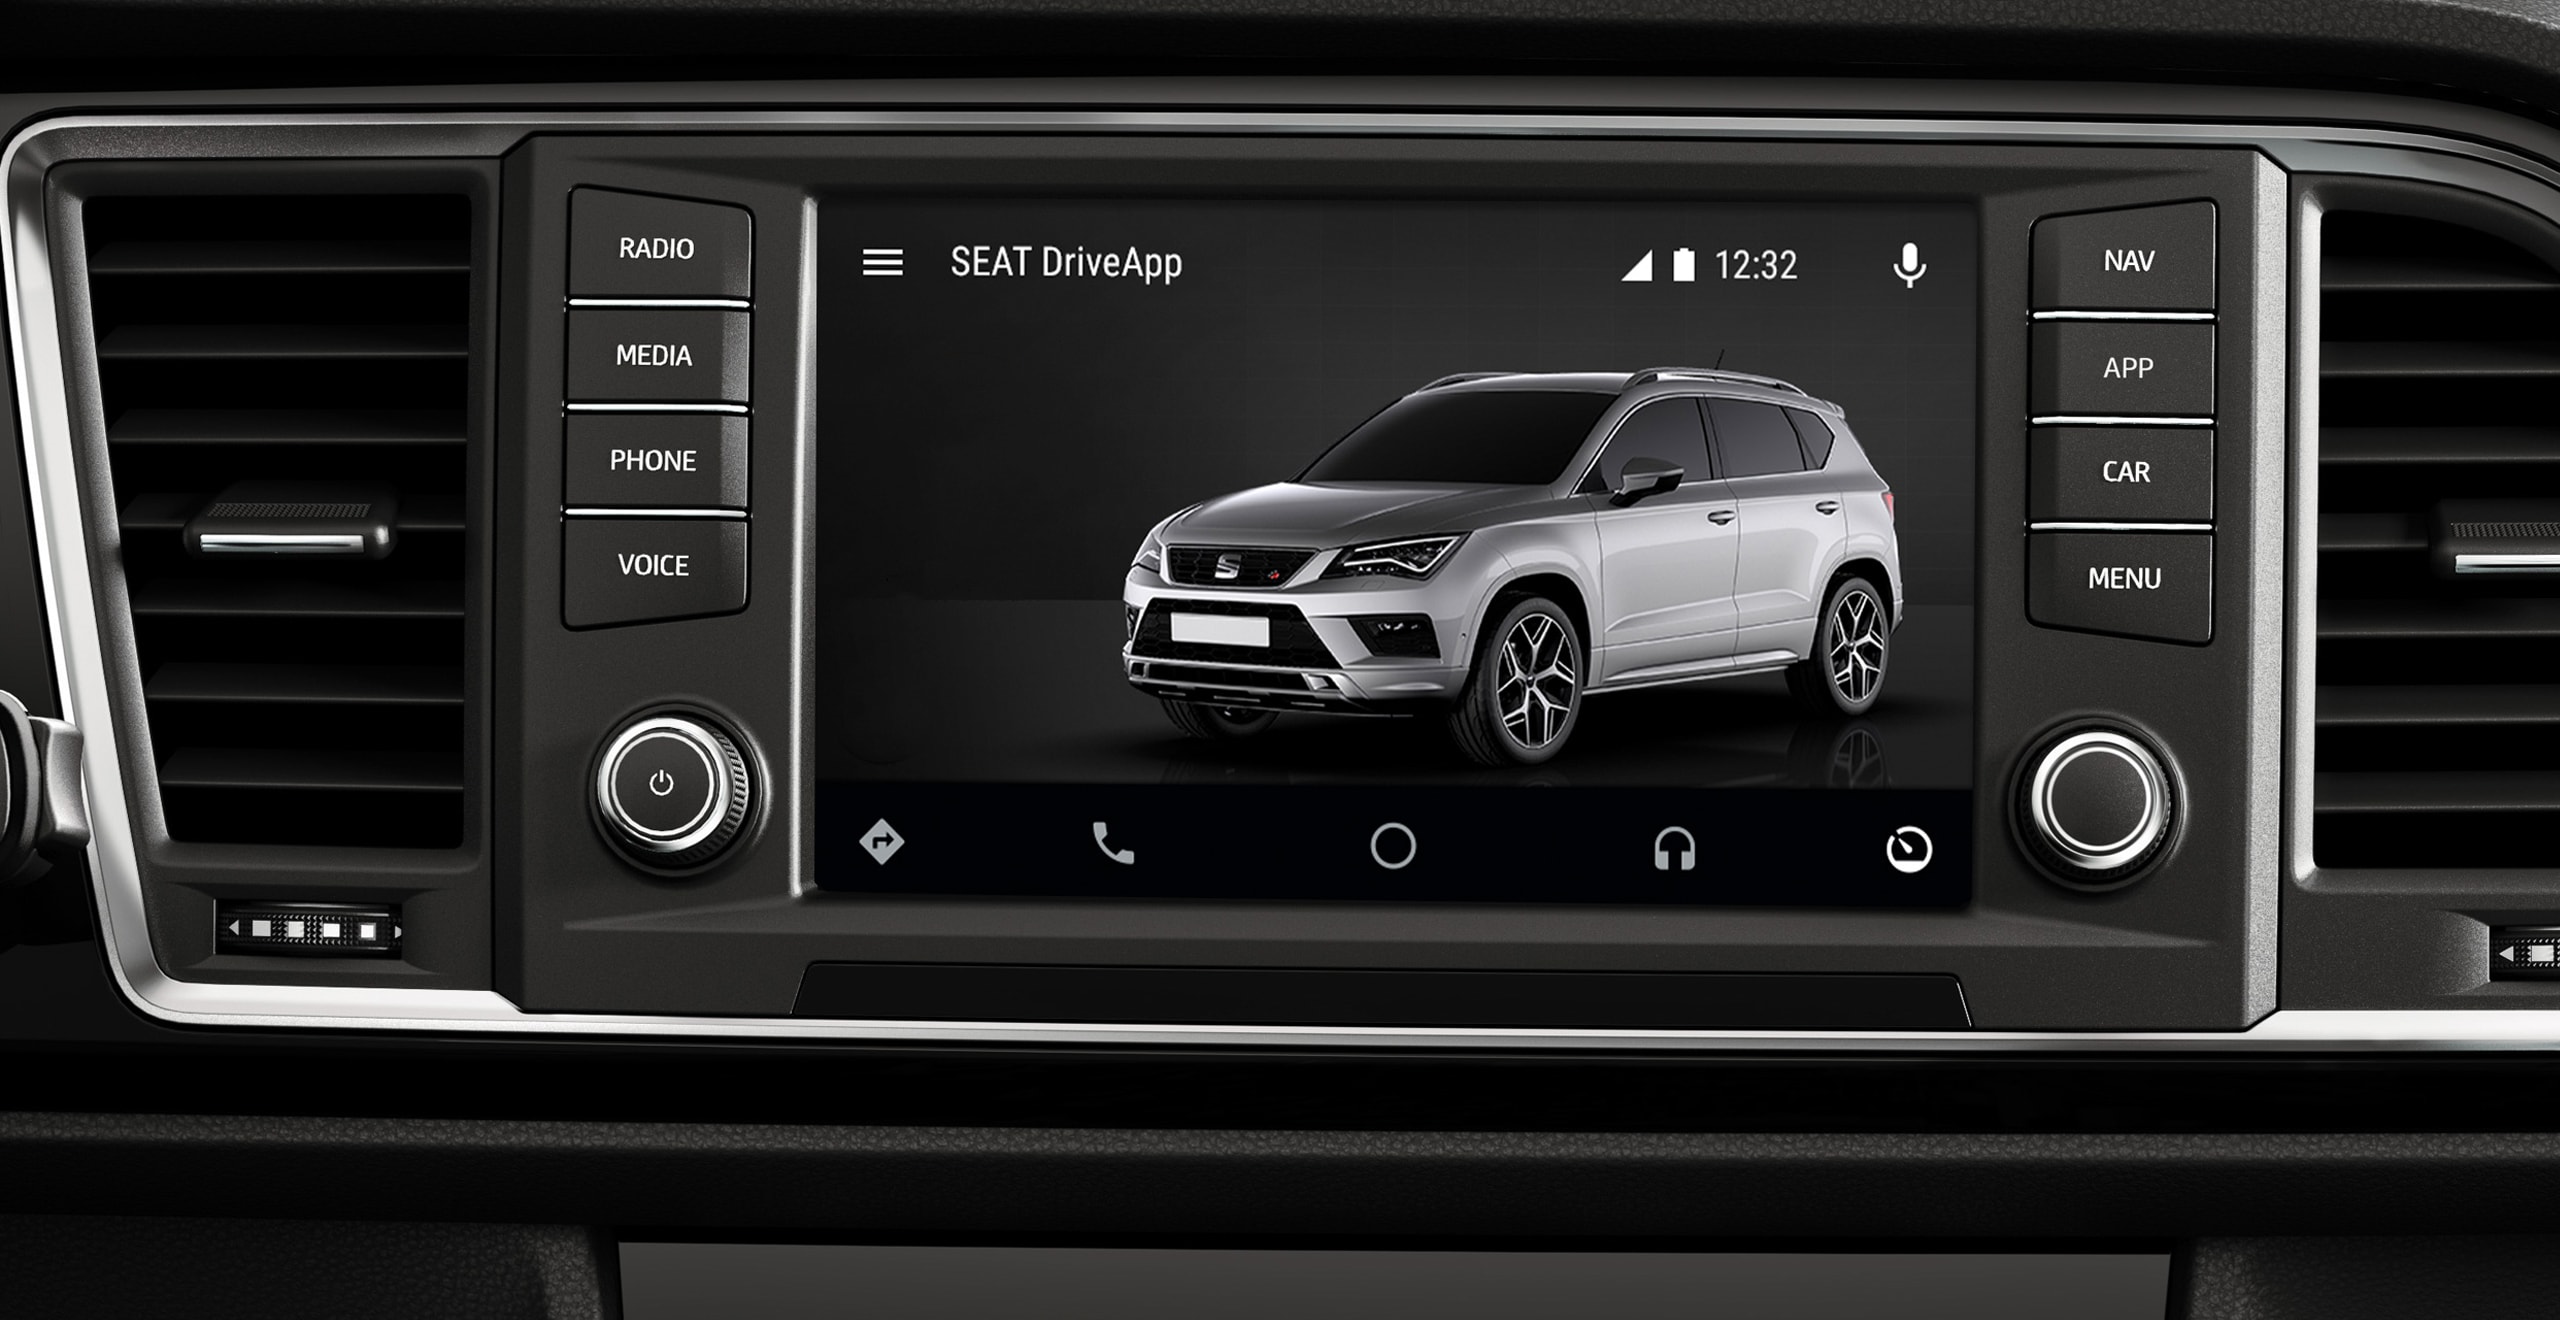 Personalizuj swoją konsolę samochodu przy pomocy aplikacji SEAT Drive App